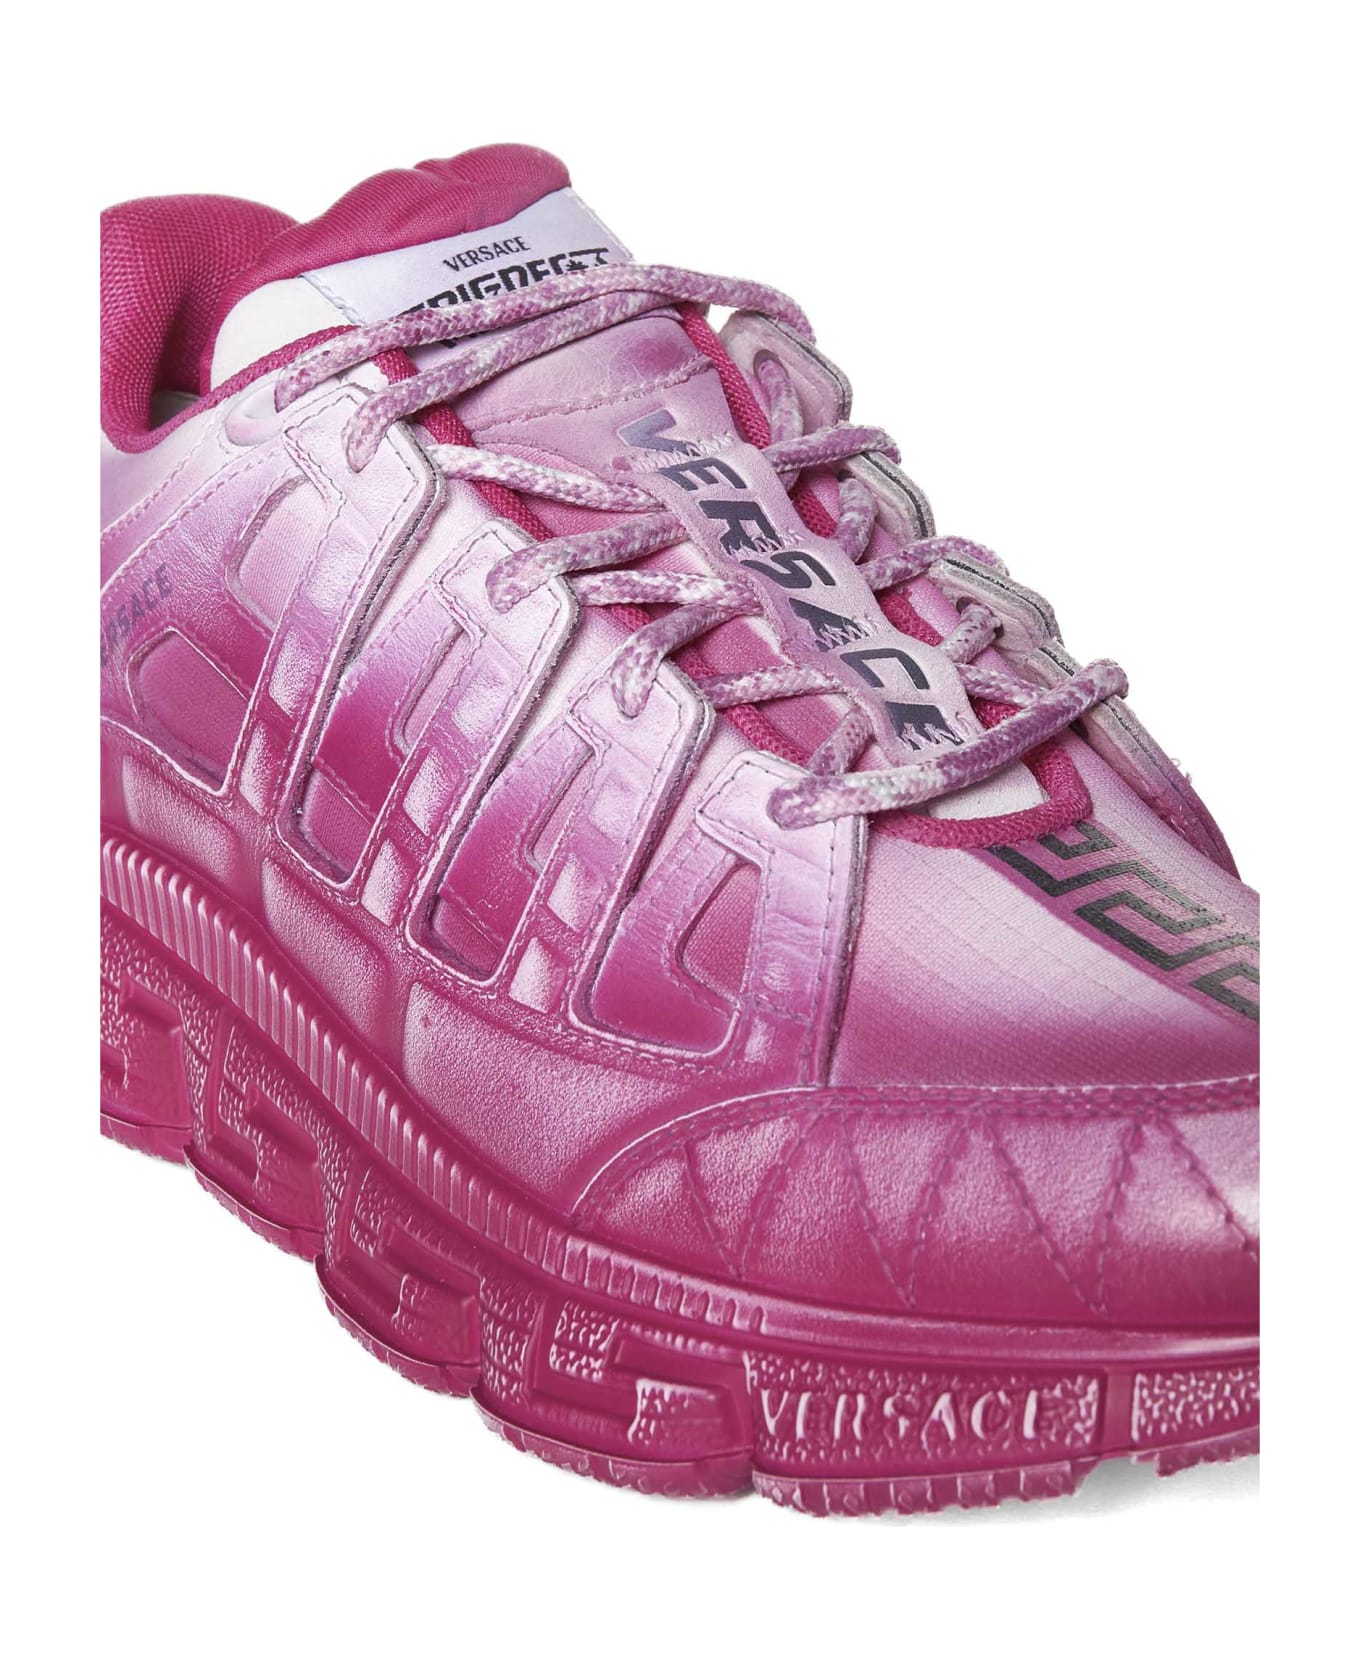 Versace Trigreca Sneakers - Warterlily